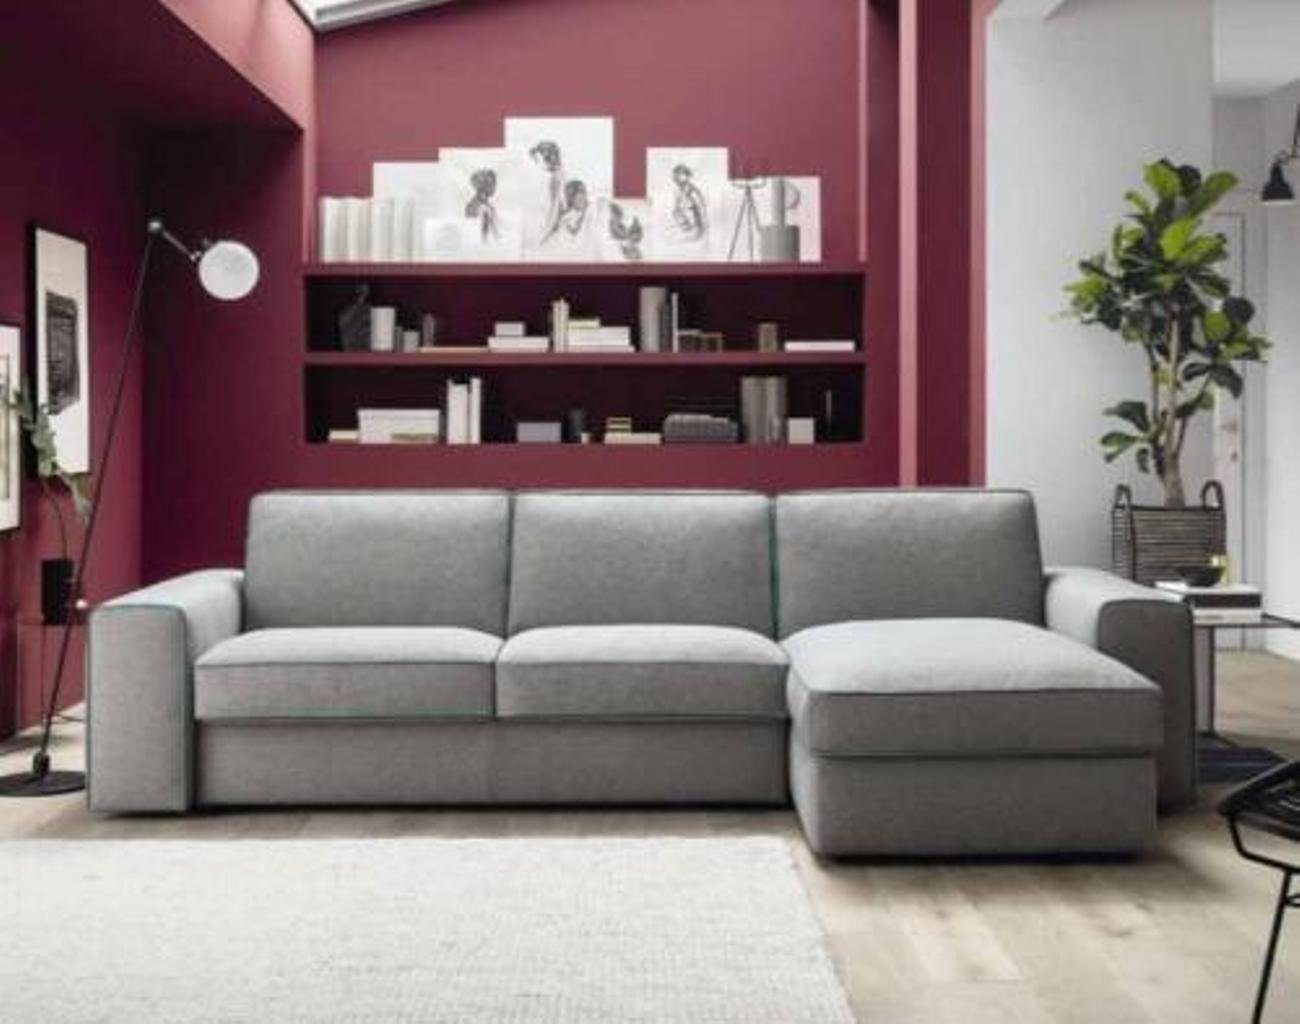 JVmoebel Ecksofa Moderne Luxus Design, L-Form Textil Sofa alfitalia in Europe Ecke Holz Made